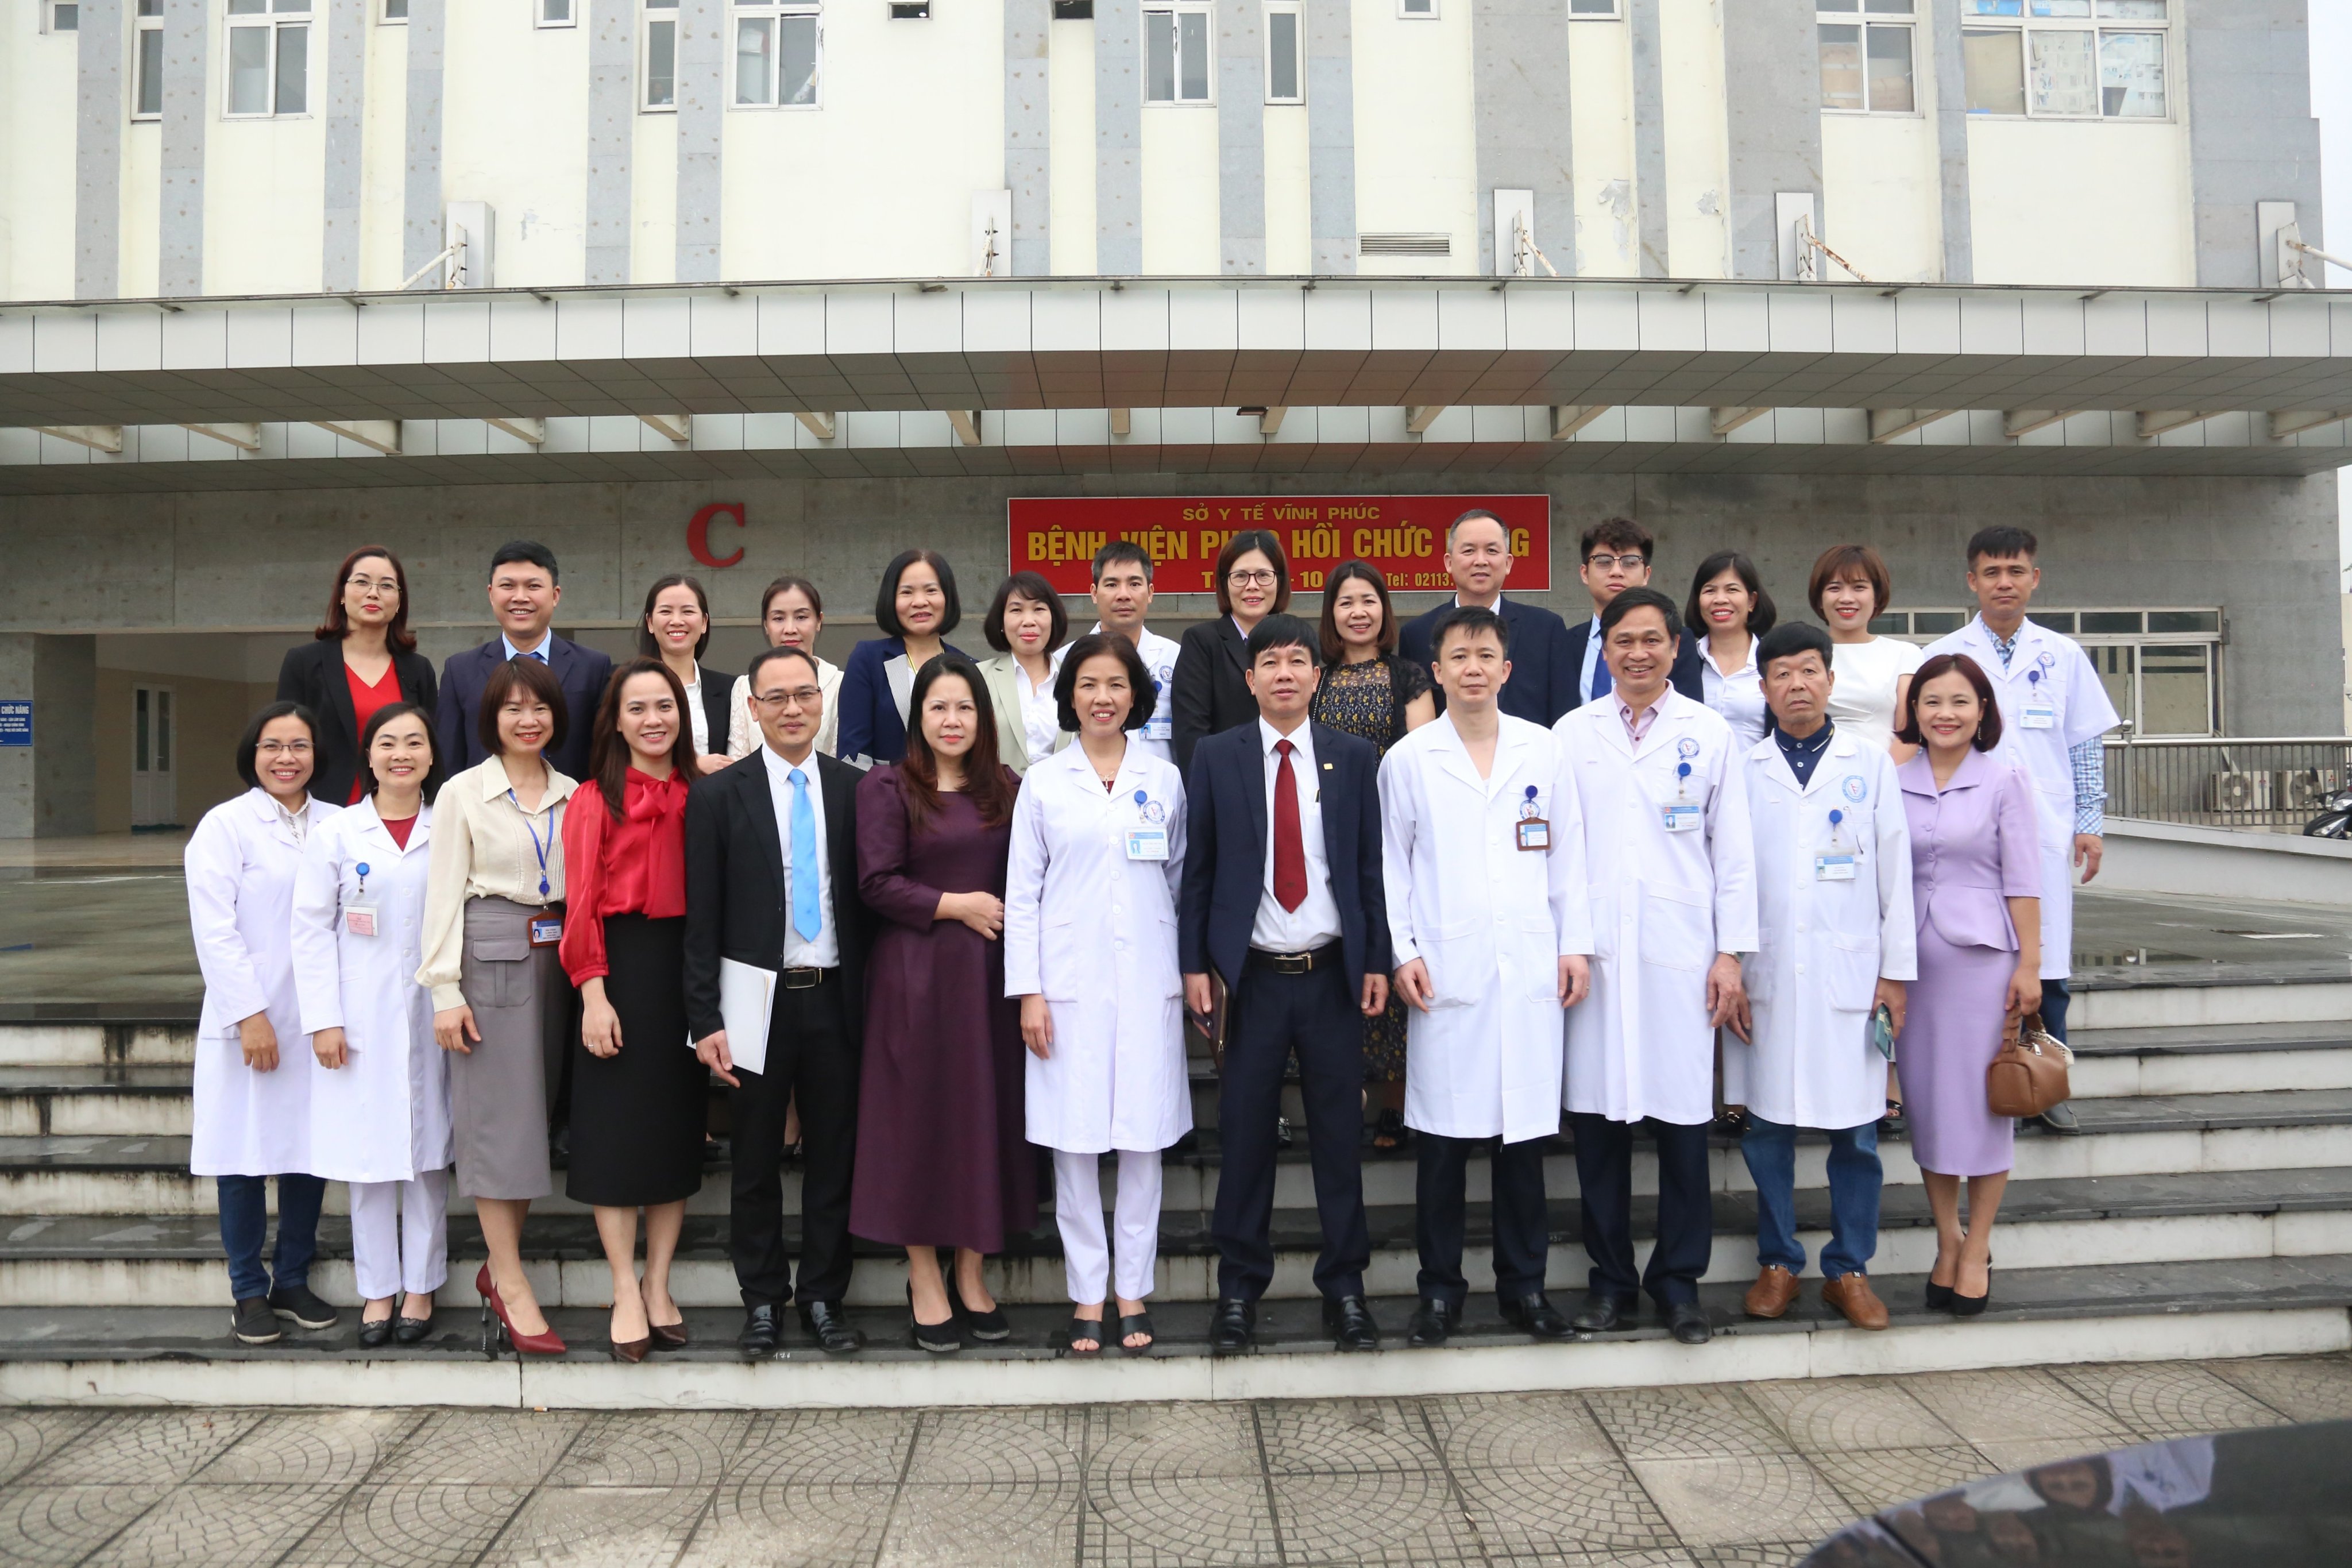 Đoàn công tác Bệnh viện Lão khoa - Phục hồi chức năng Quảng Ninh tham quan, trao đổi kinh nghiệm tại Bệnh viện Phục hồi chức năng tỉnh Vĩnh Phúc